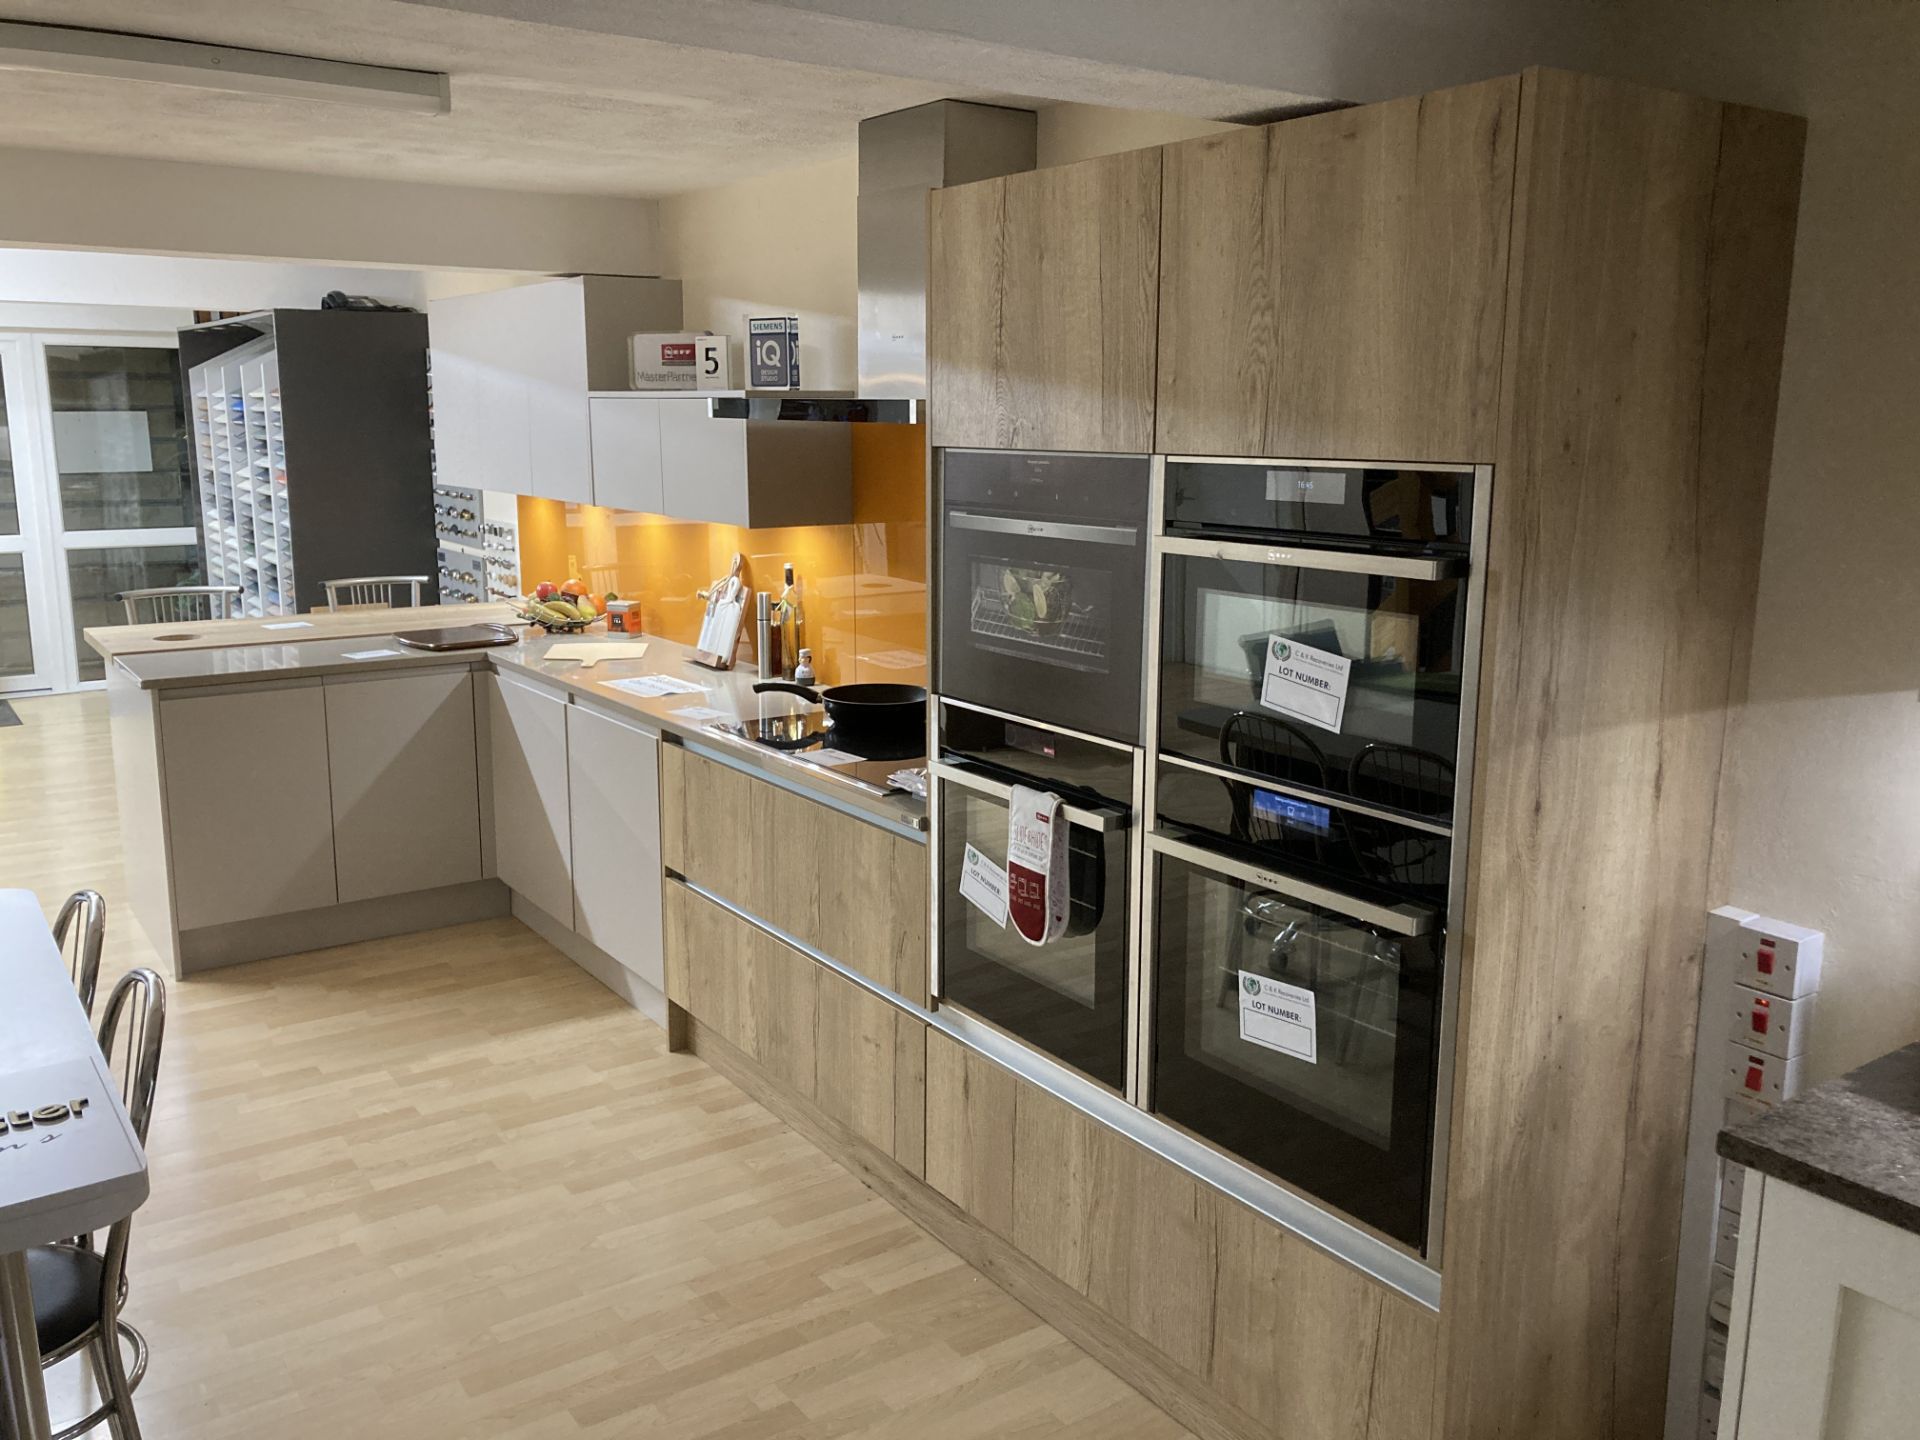 Cashmere and oak kitchen display with appliances - Bild 2 aus 21